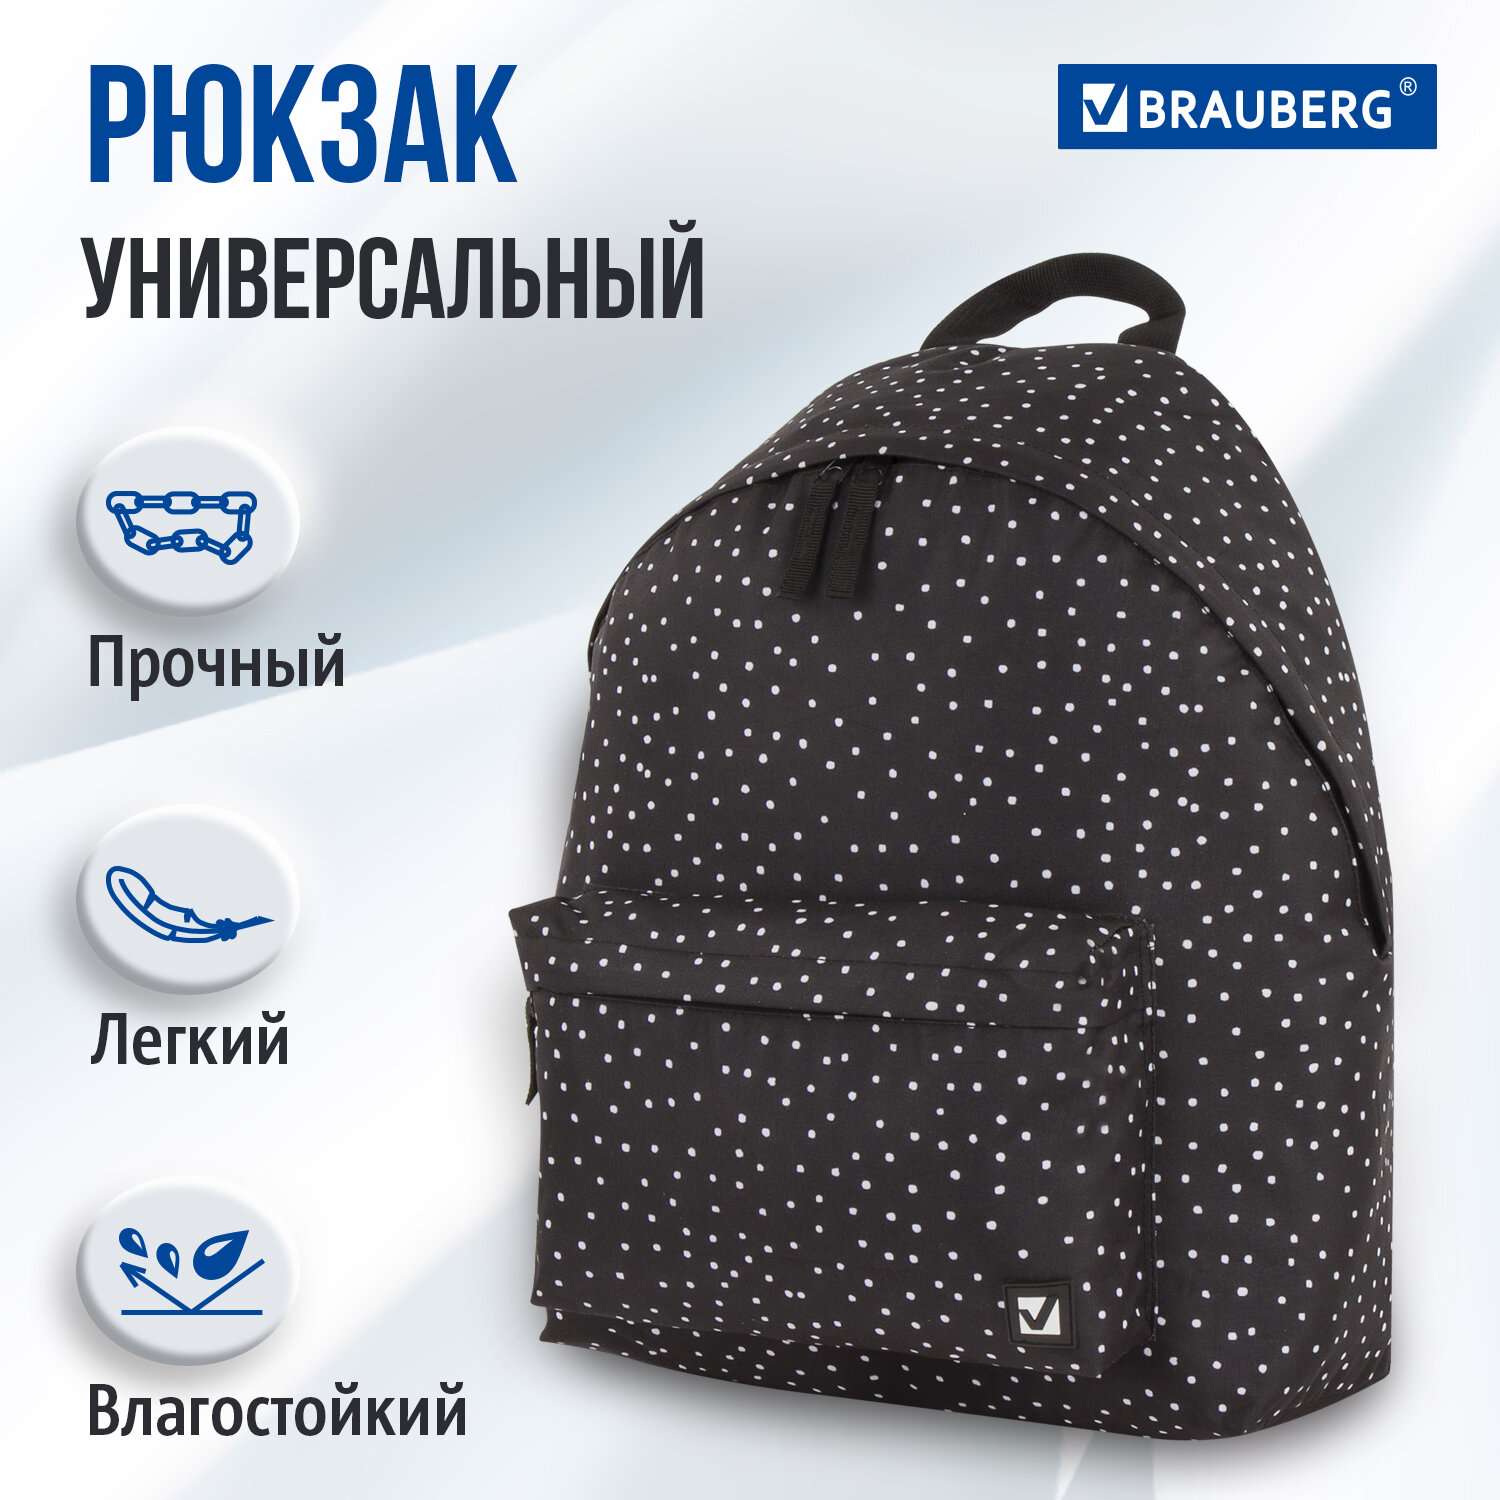 Рюкзак Brauberg универсальный сити-формат черный в горошек - фото 1